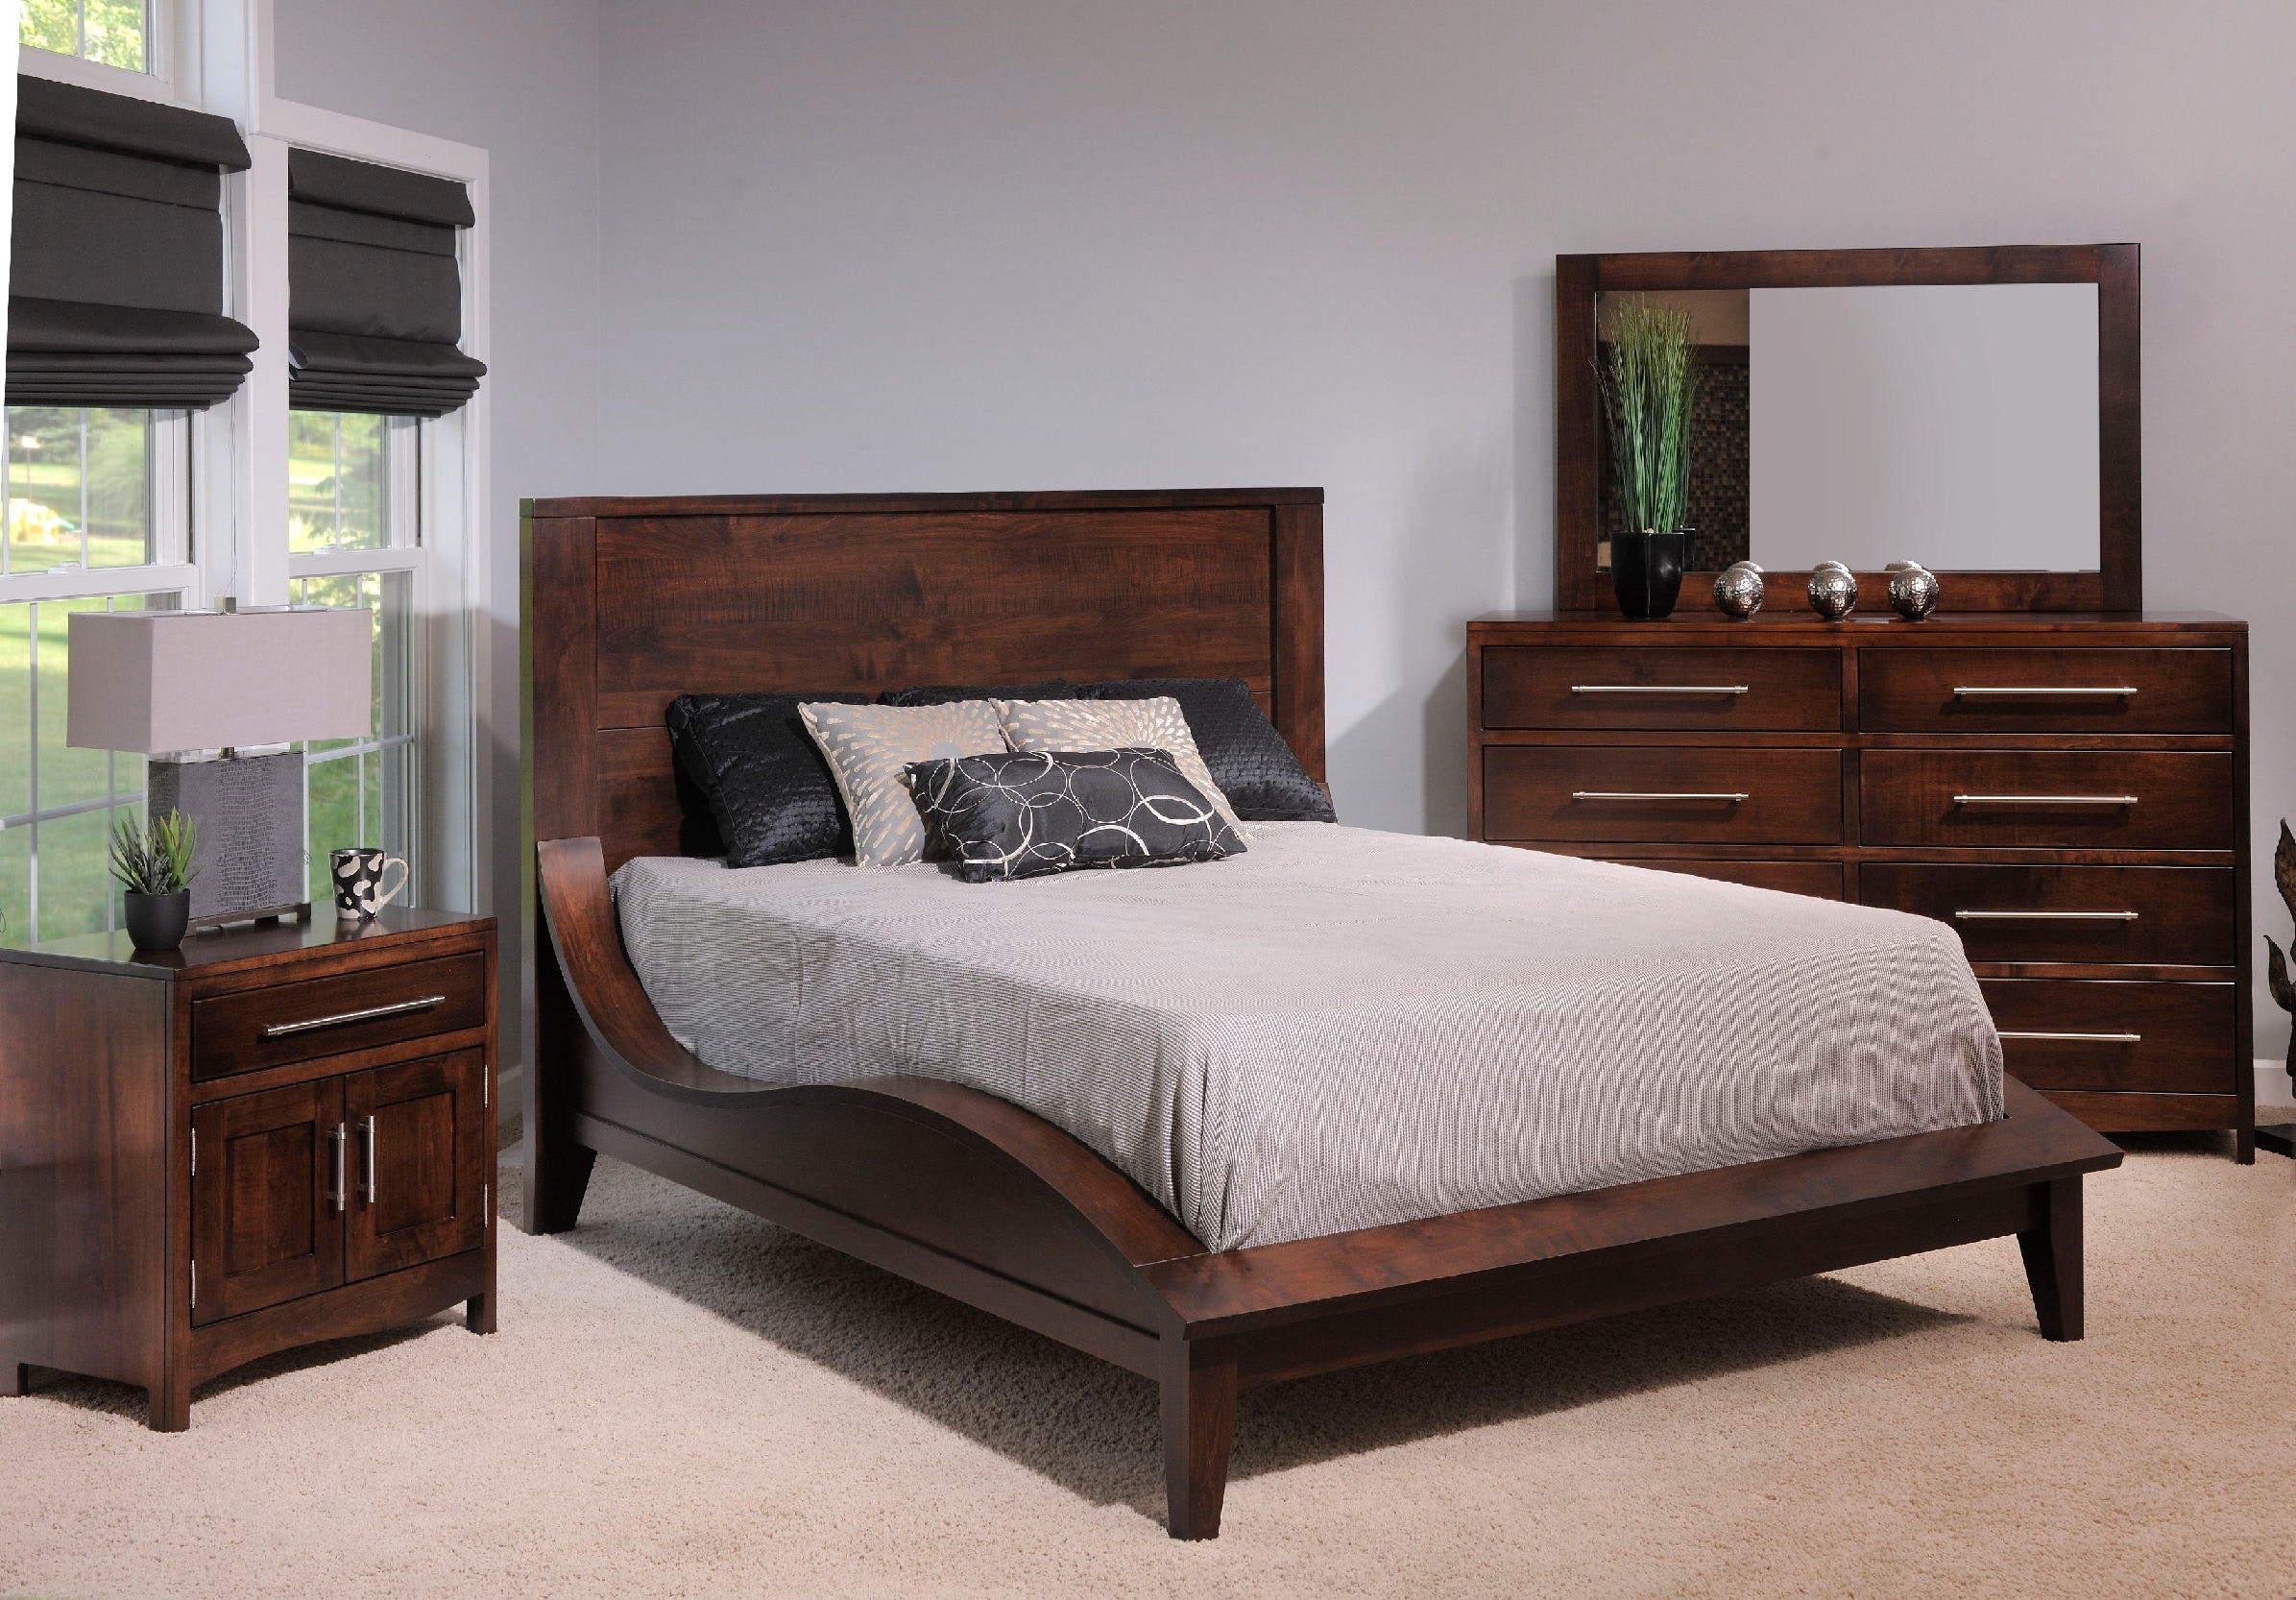 YUTZY WOODWORKING Bedroom Coronado Bed 61104cal - Metropolitan